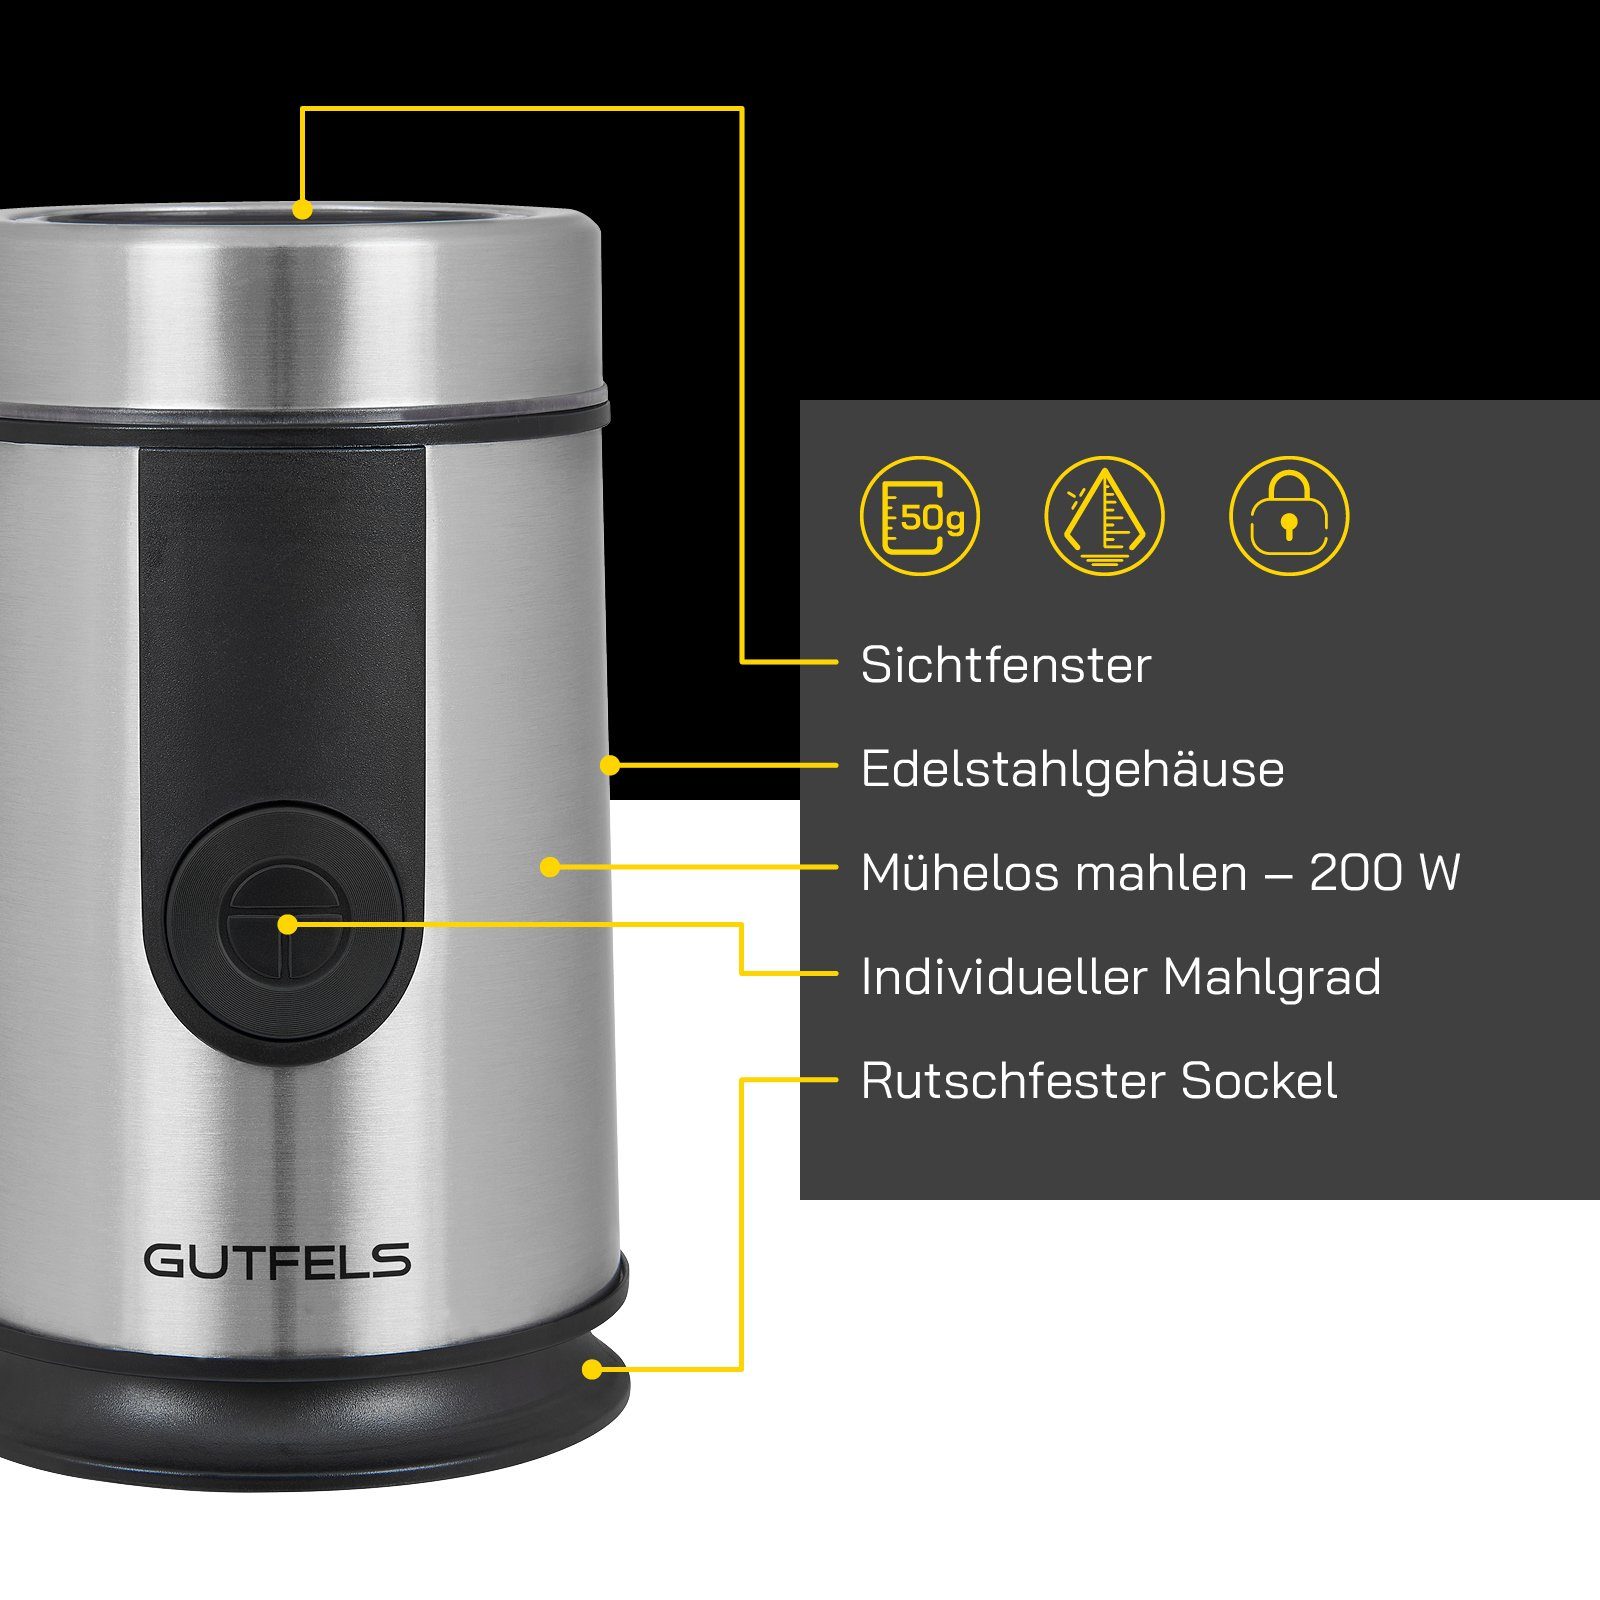 Gutfels Kaffeemühle Kontrolle für W, g Bohnenbehälter, Nüsse, 5010, Mahlgrad 50,00 COFFEE & Bohnen, Edelstahlklinge, 200,00 Gewürze